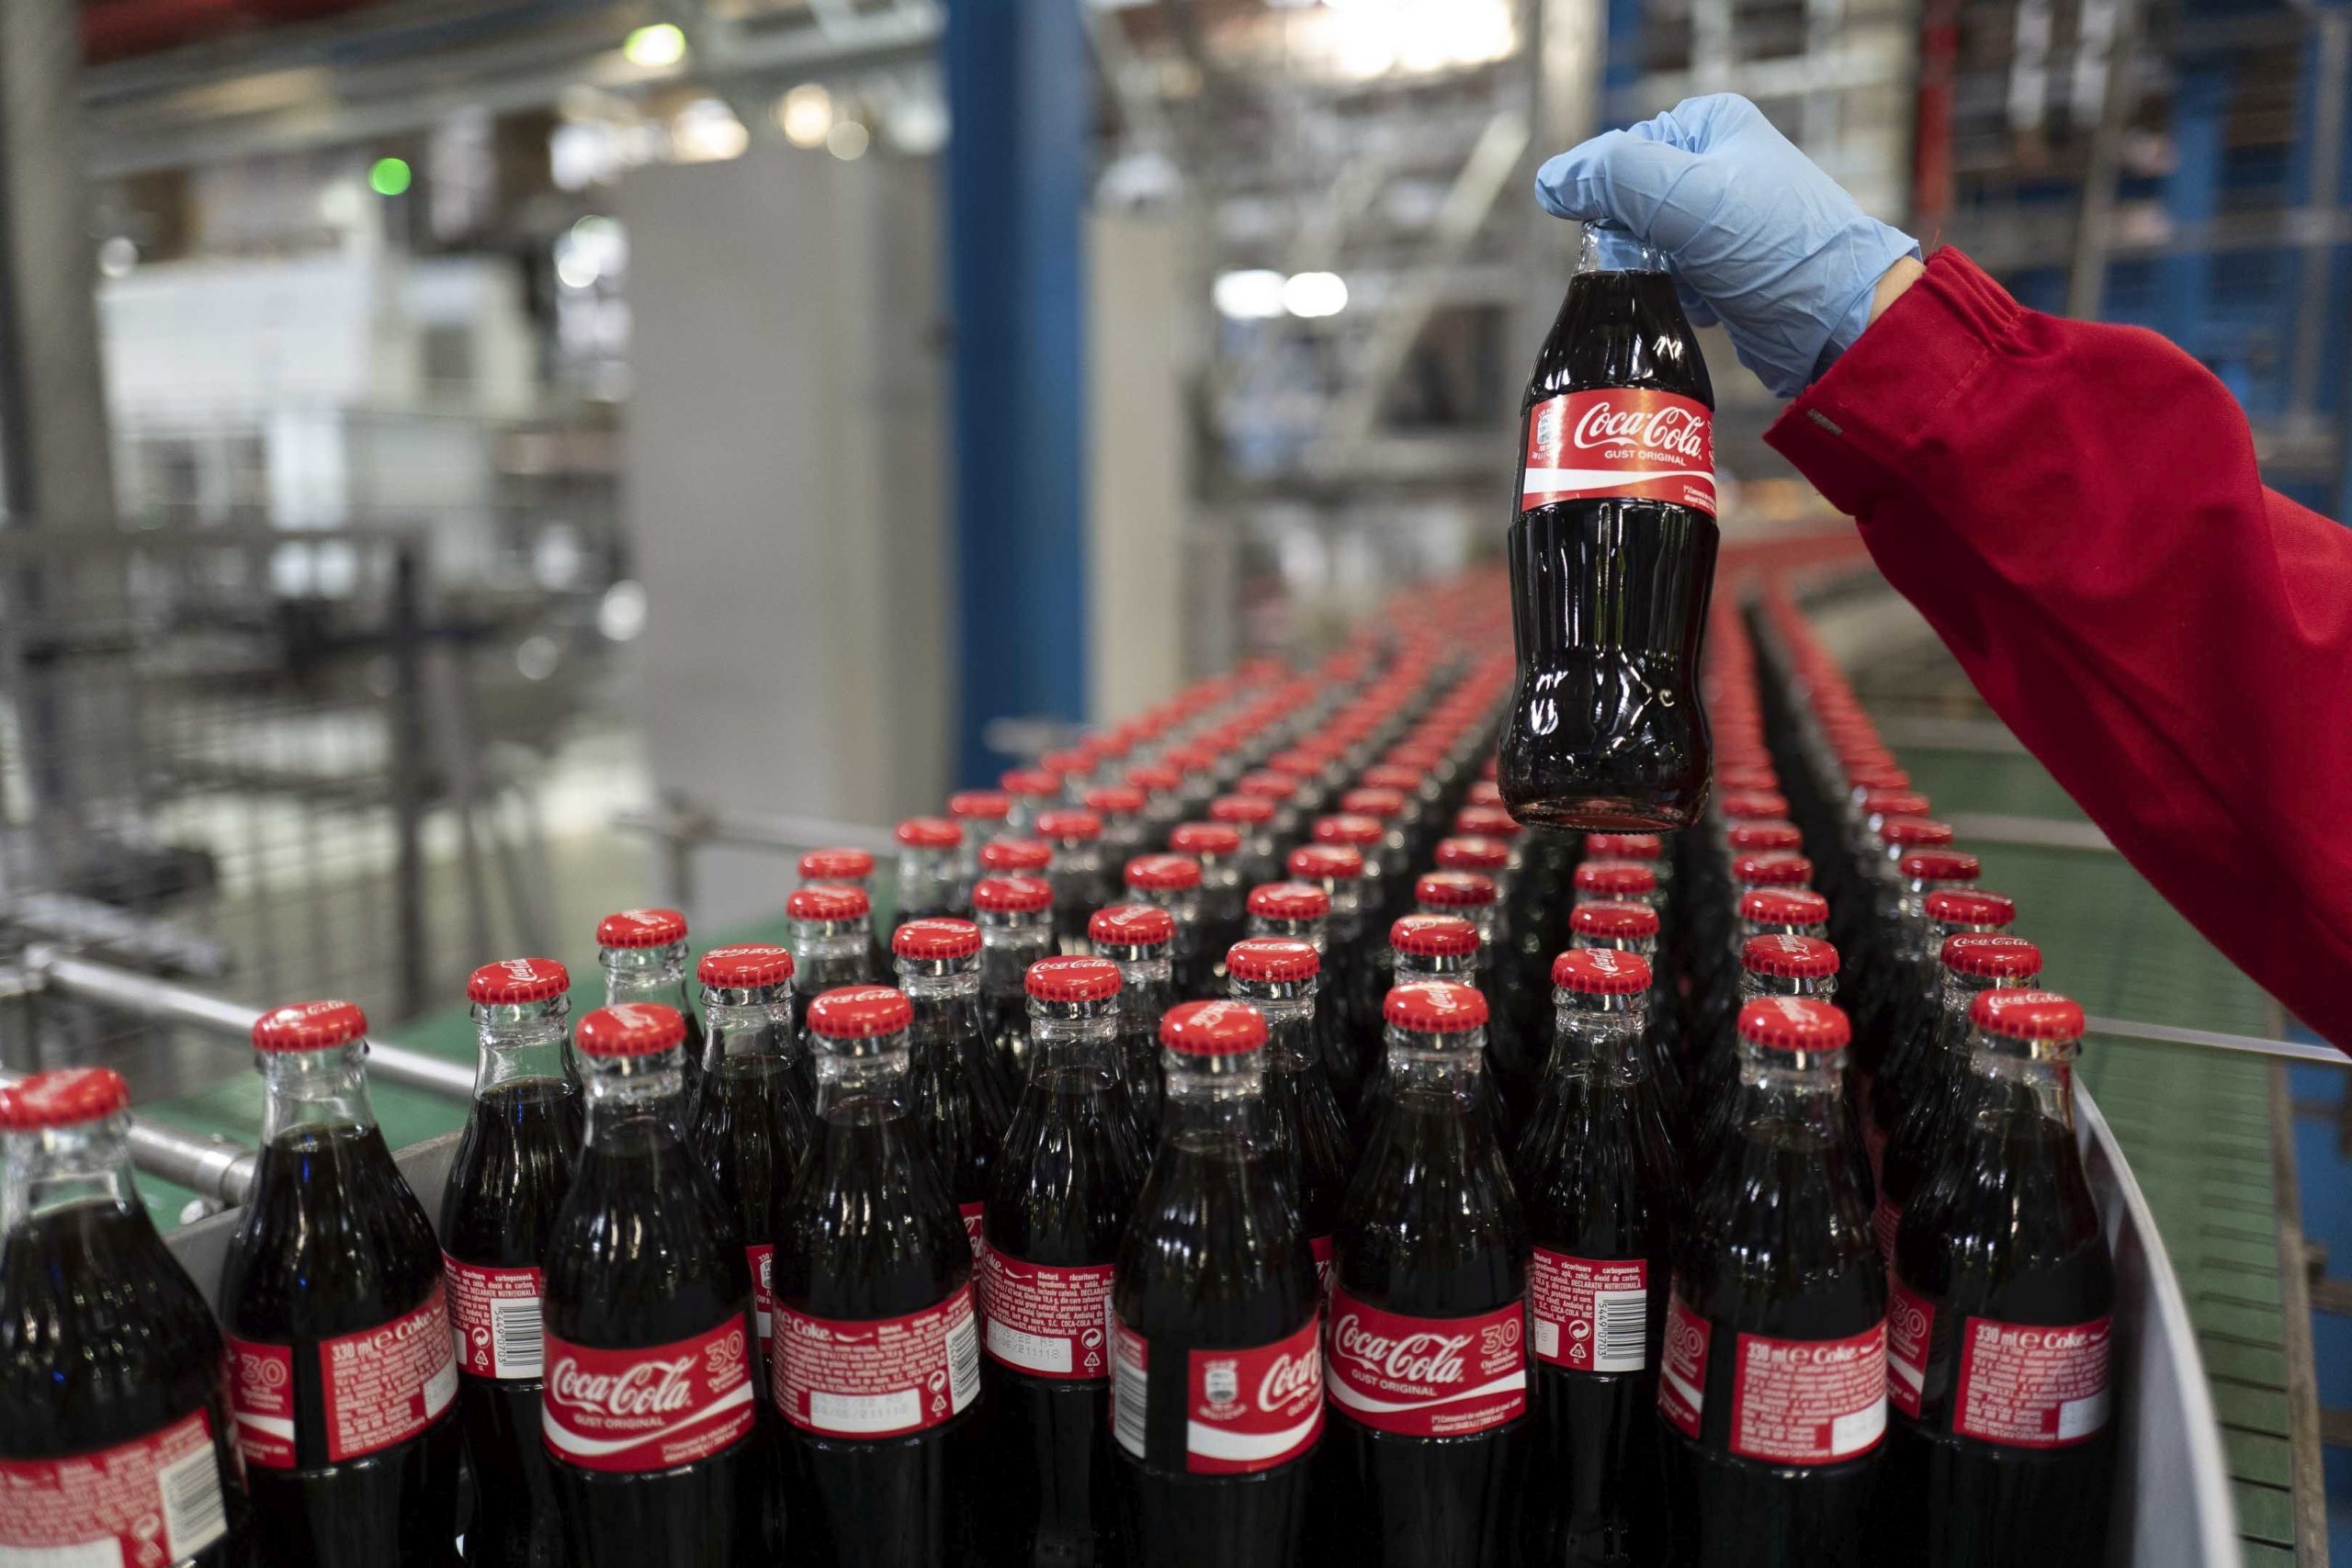 Raport de sustenabilitate Coca Cola România – Ţintele companiei includ: utilizarea în proporţie de 100% de energie electrică din surse regenerabile, creşterea gradului de utilizare a PET-ului reciclat şi înlocuirea frigiderelor cu unele mai eficiente energetic